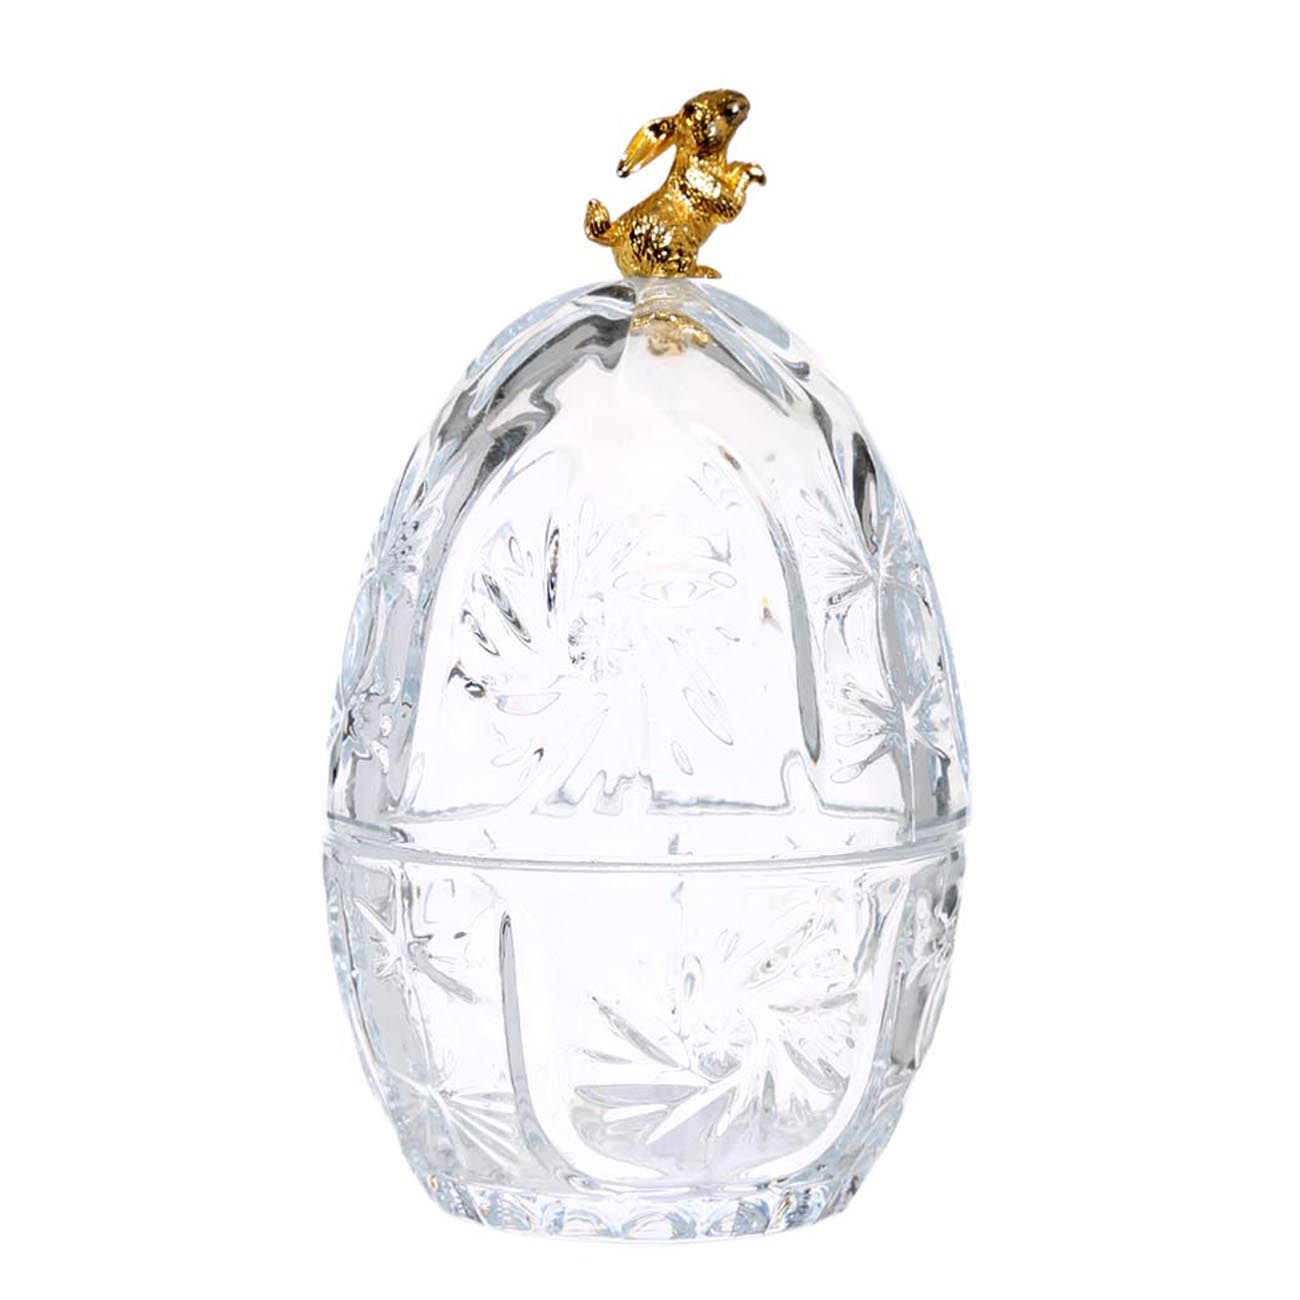 Конфетница, 18х10 см, с крышкой, стекло/металл, Золотистый заяц, Easter gold